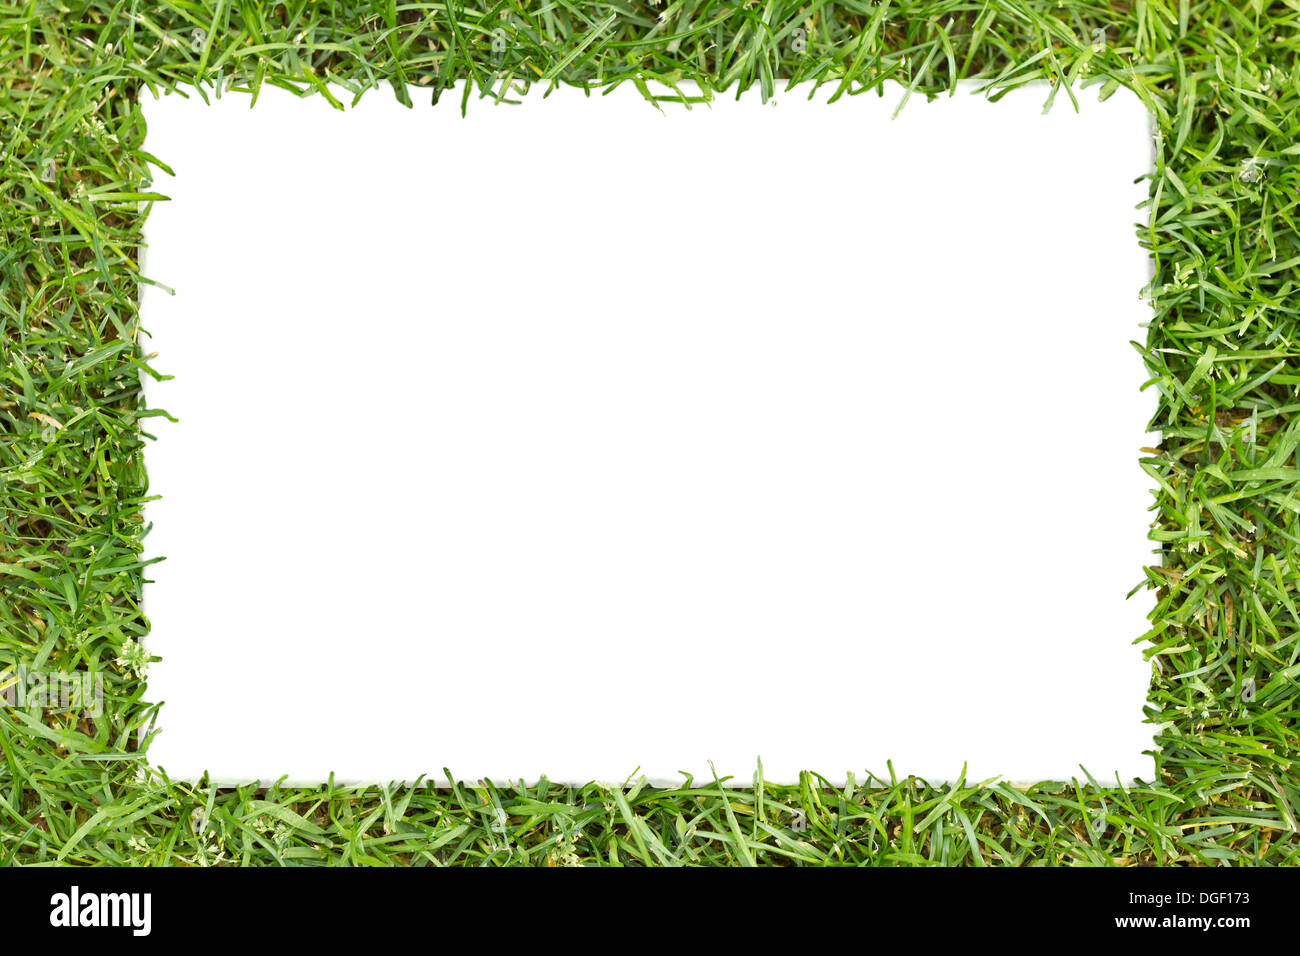 Bastidor de hierba verde con texto blanco en forma de rectángulo Foto de stock